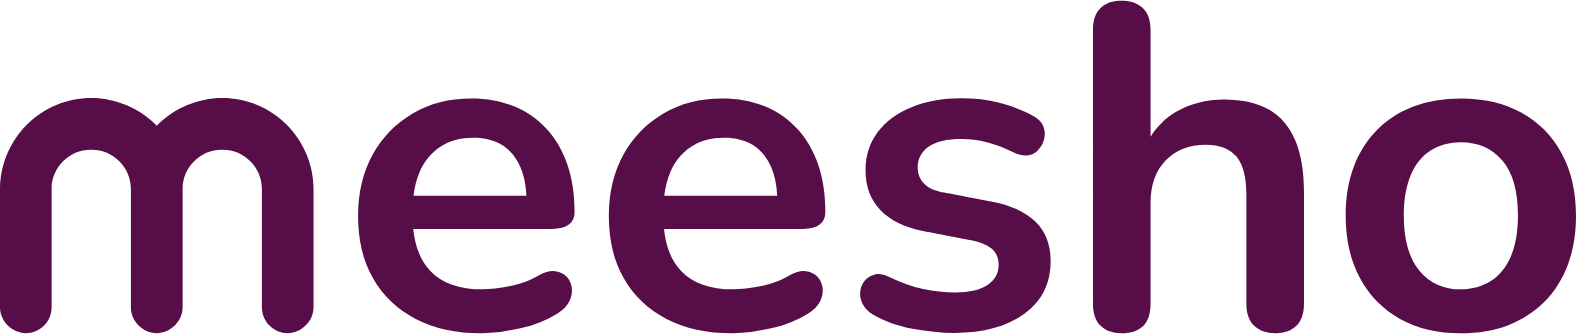 meesho-logo-work